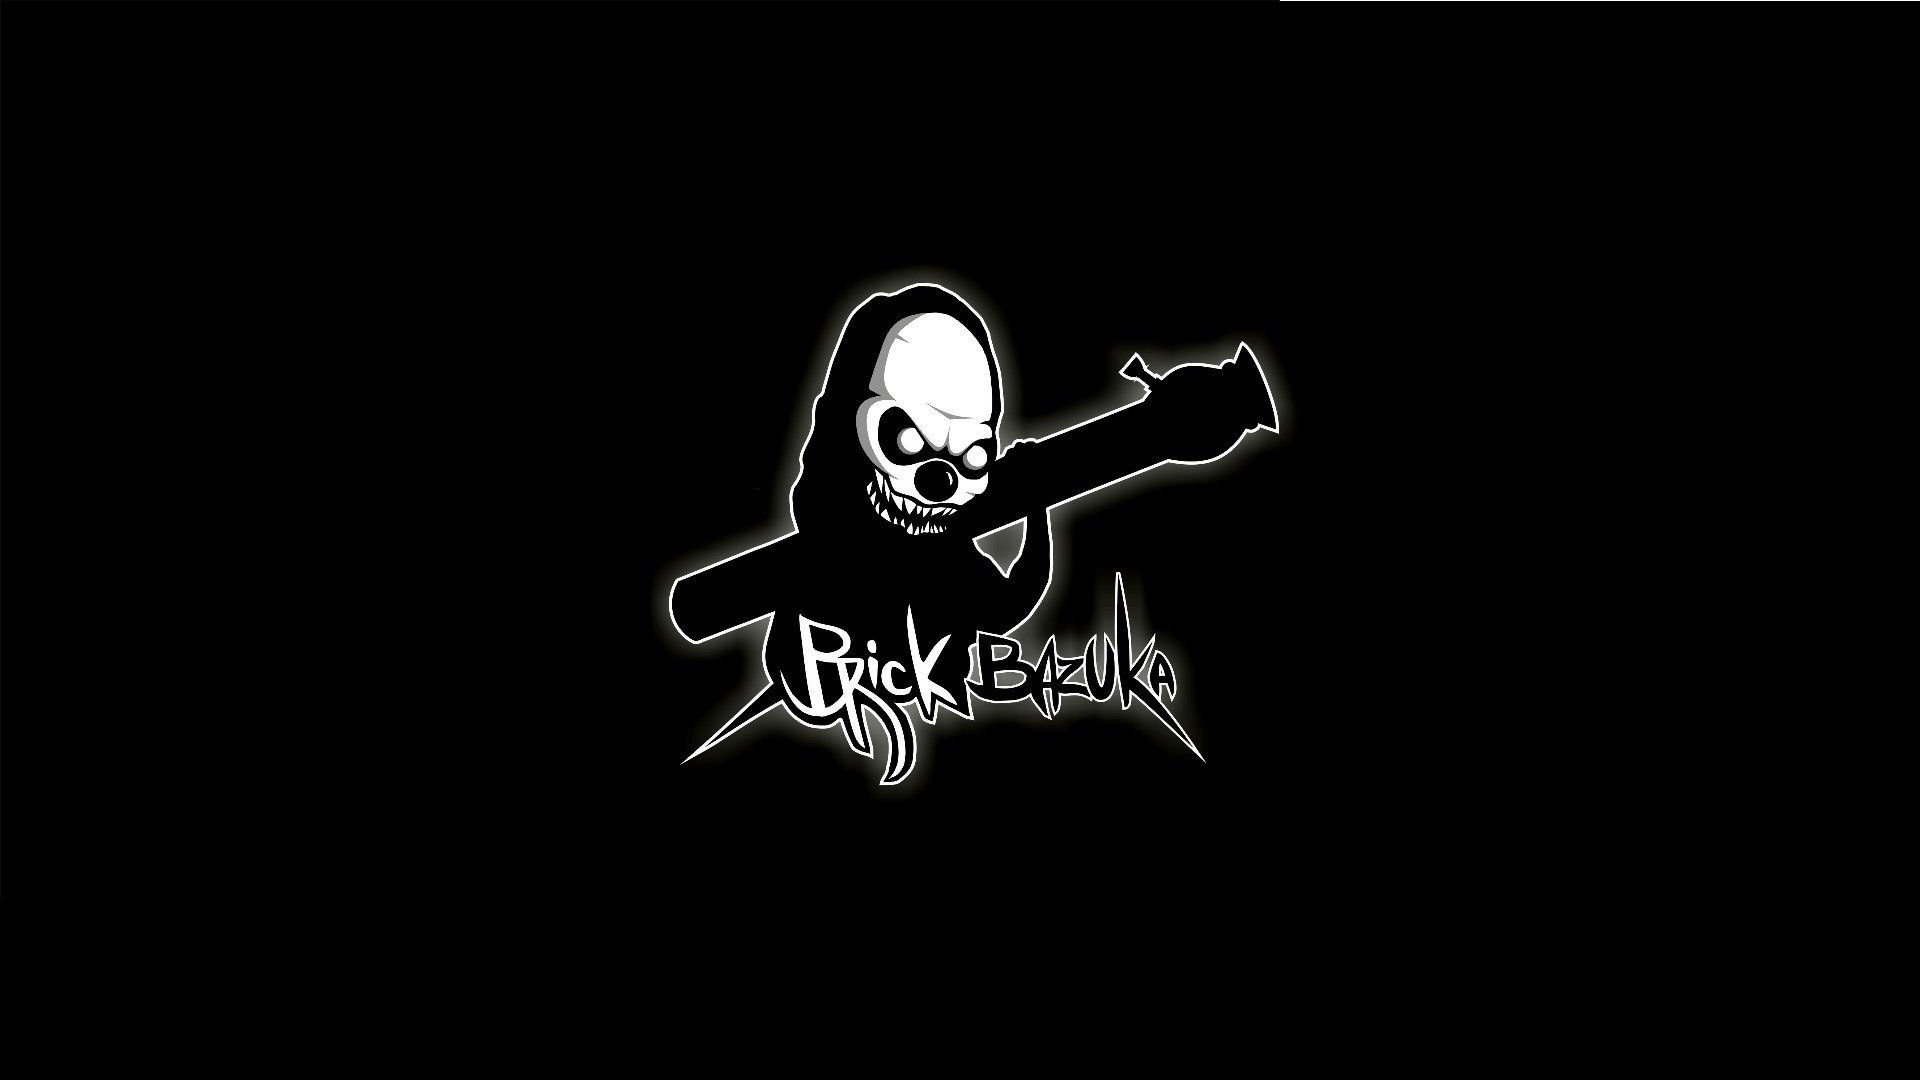 кирпич bazuka логотип минимализм черный чемодан клан хип -хоп музыка